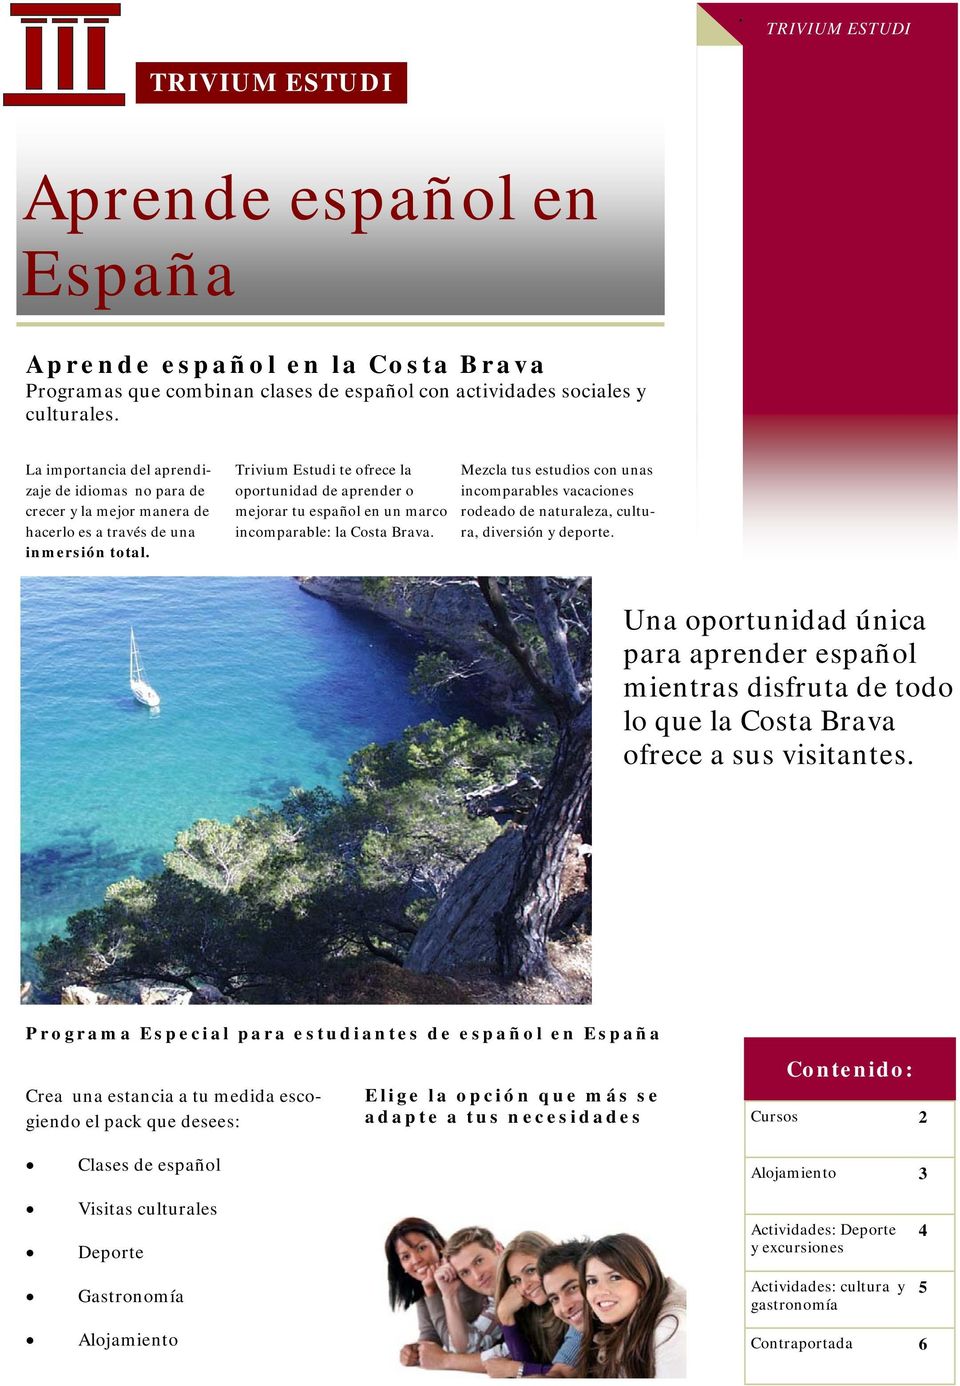 Trivium Estudi te ofrece la oportunidad de aprender o mejorar tu español en un marco incomparable: la Costa Brava.